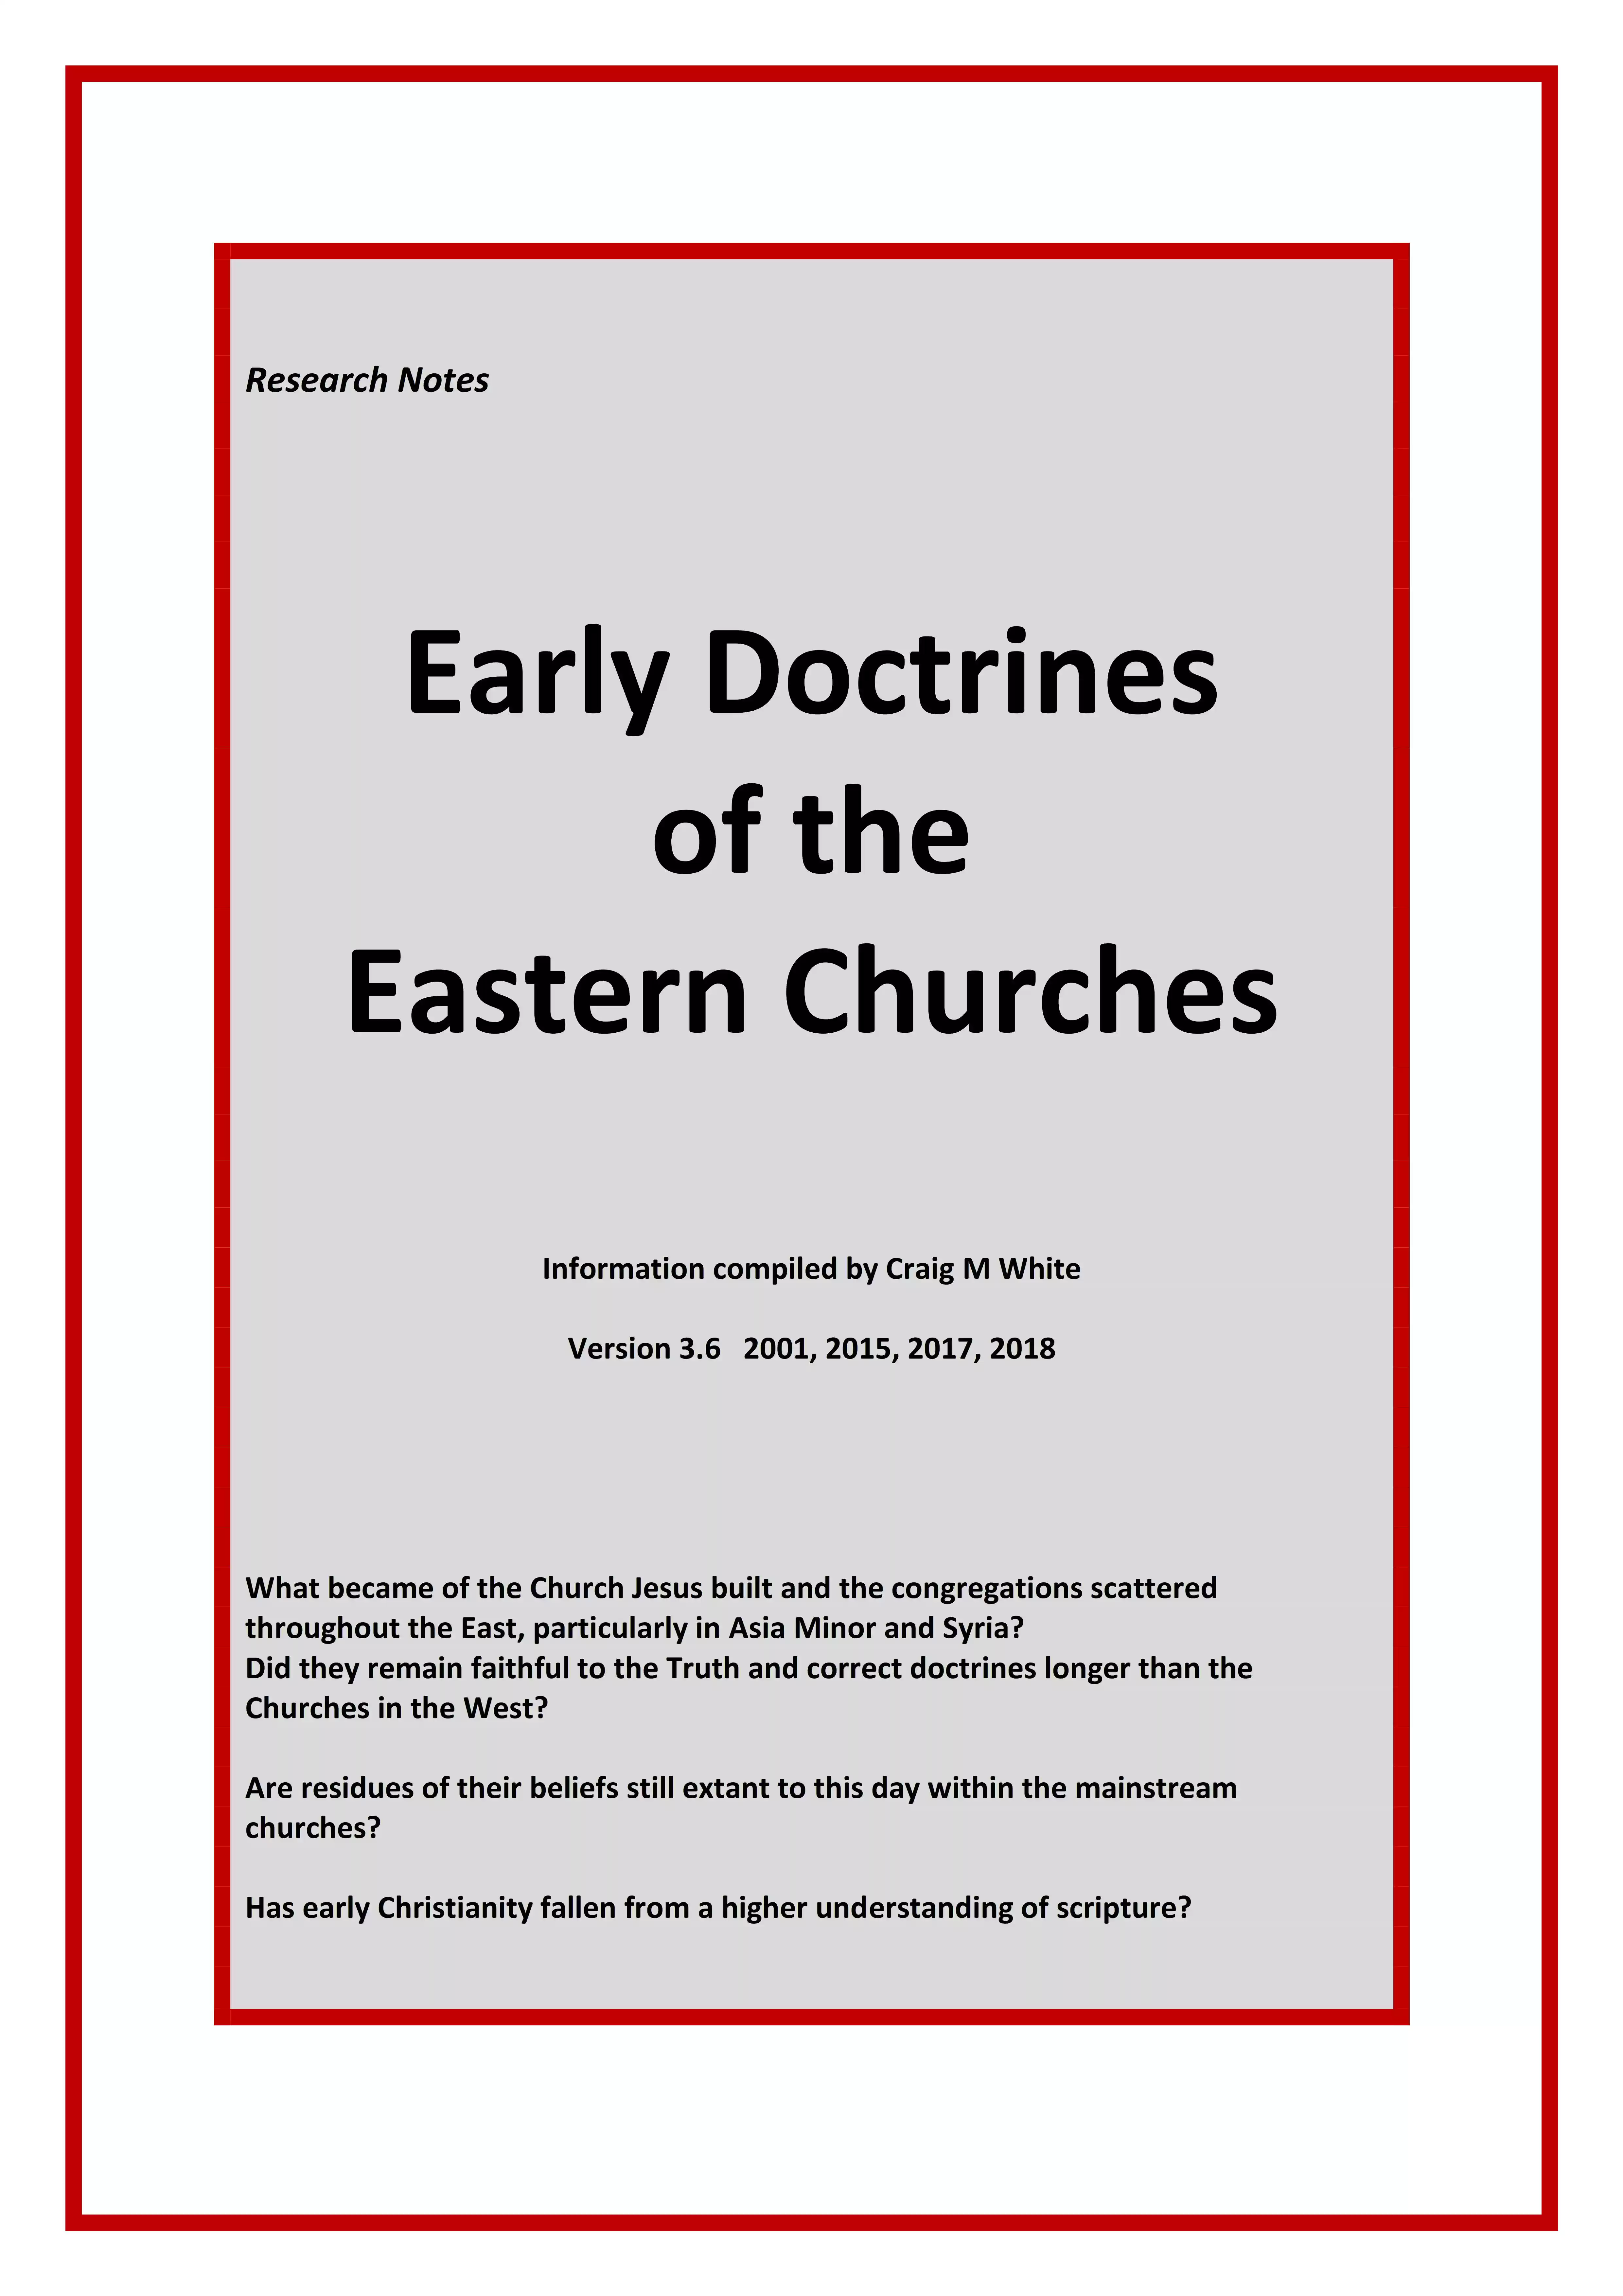 Eastern Churches